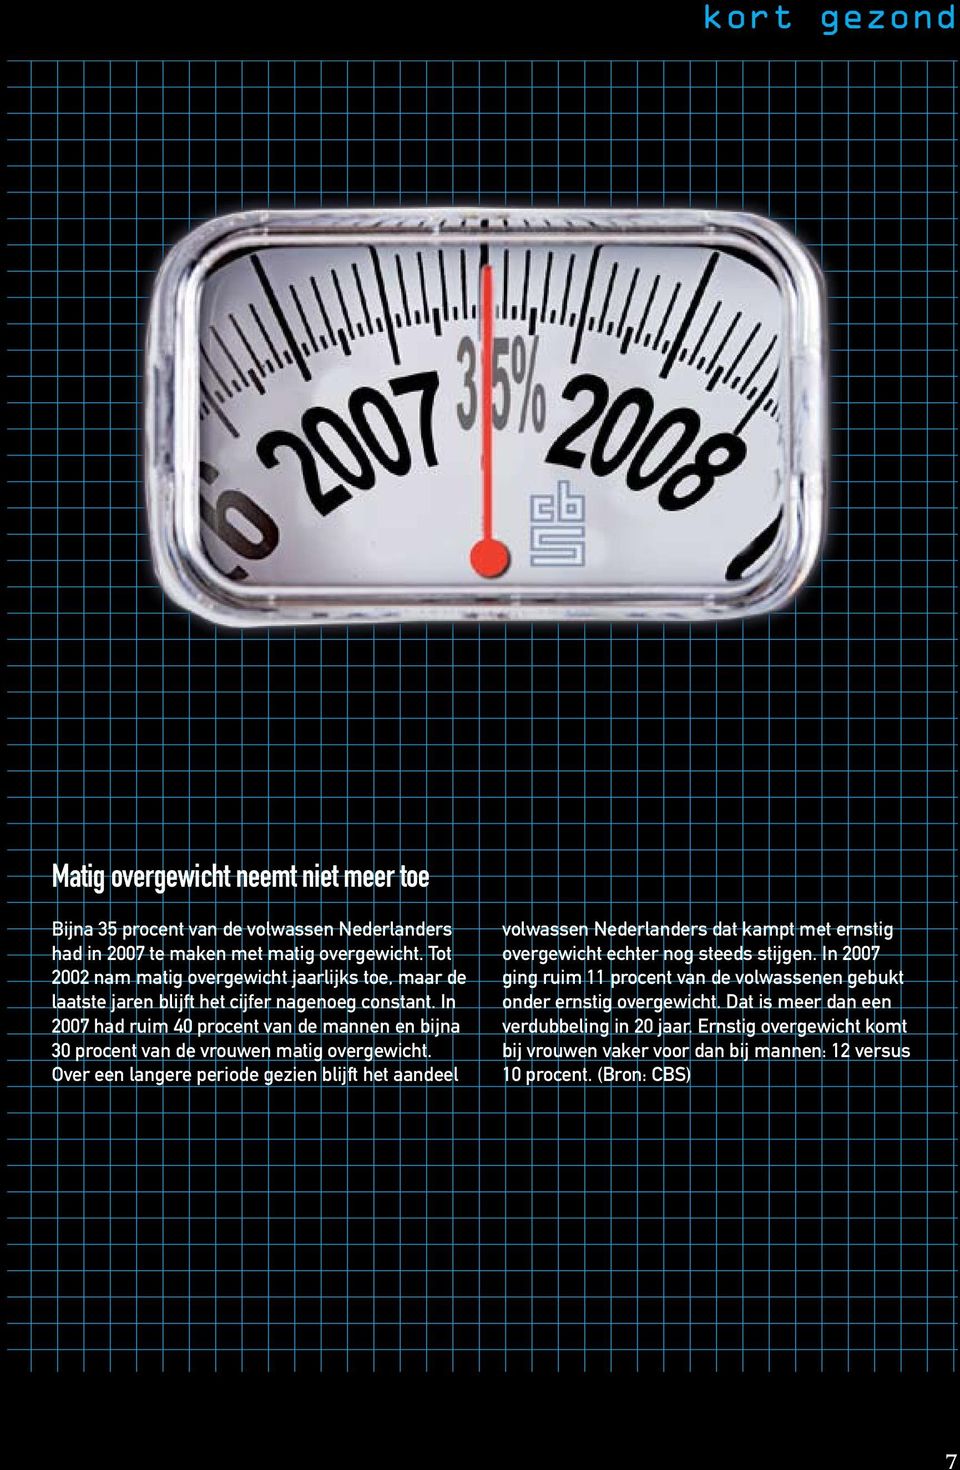 In 2007 had ruim 40 procent van de mannen en bijna 30 procent van de vrouwen matig overgewicht.